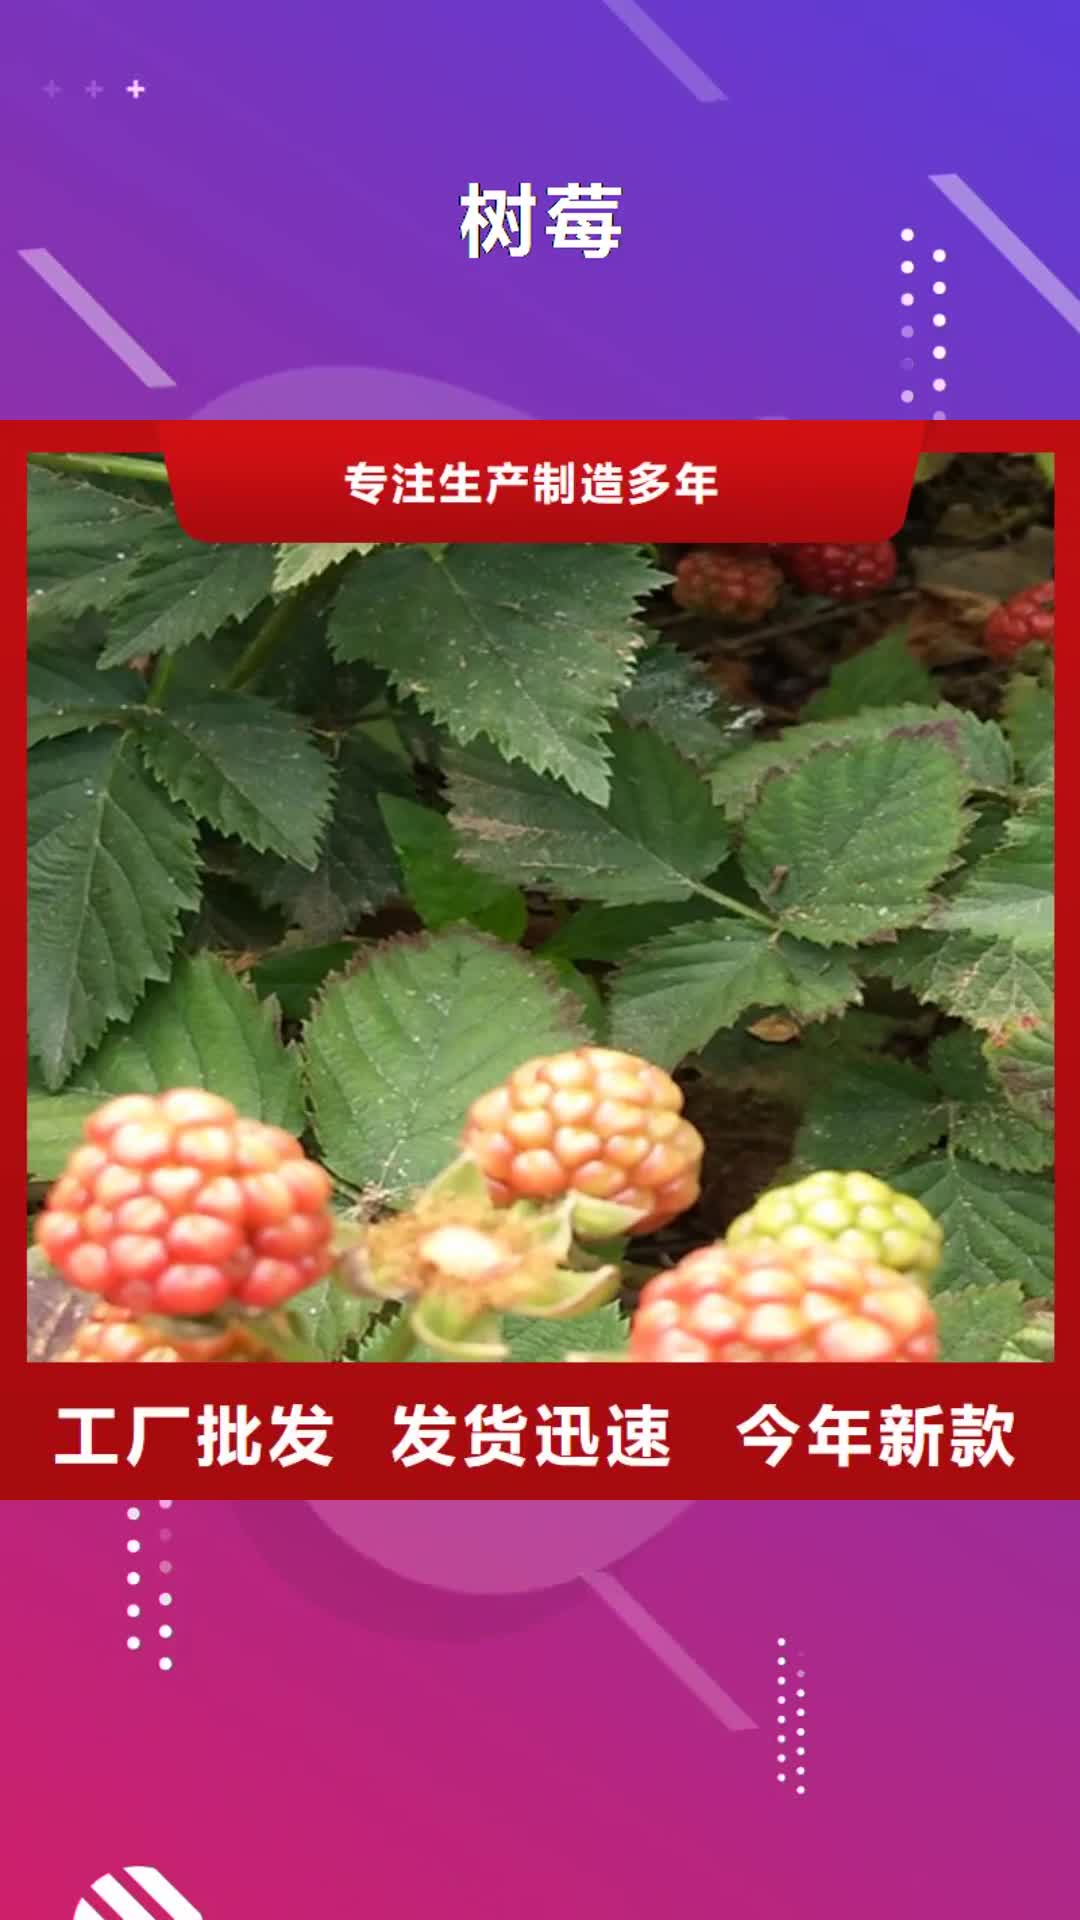 【鹤壁 树莓-梨树苗大品牌值得信赖】